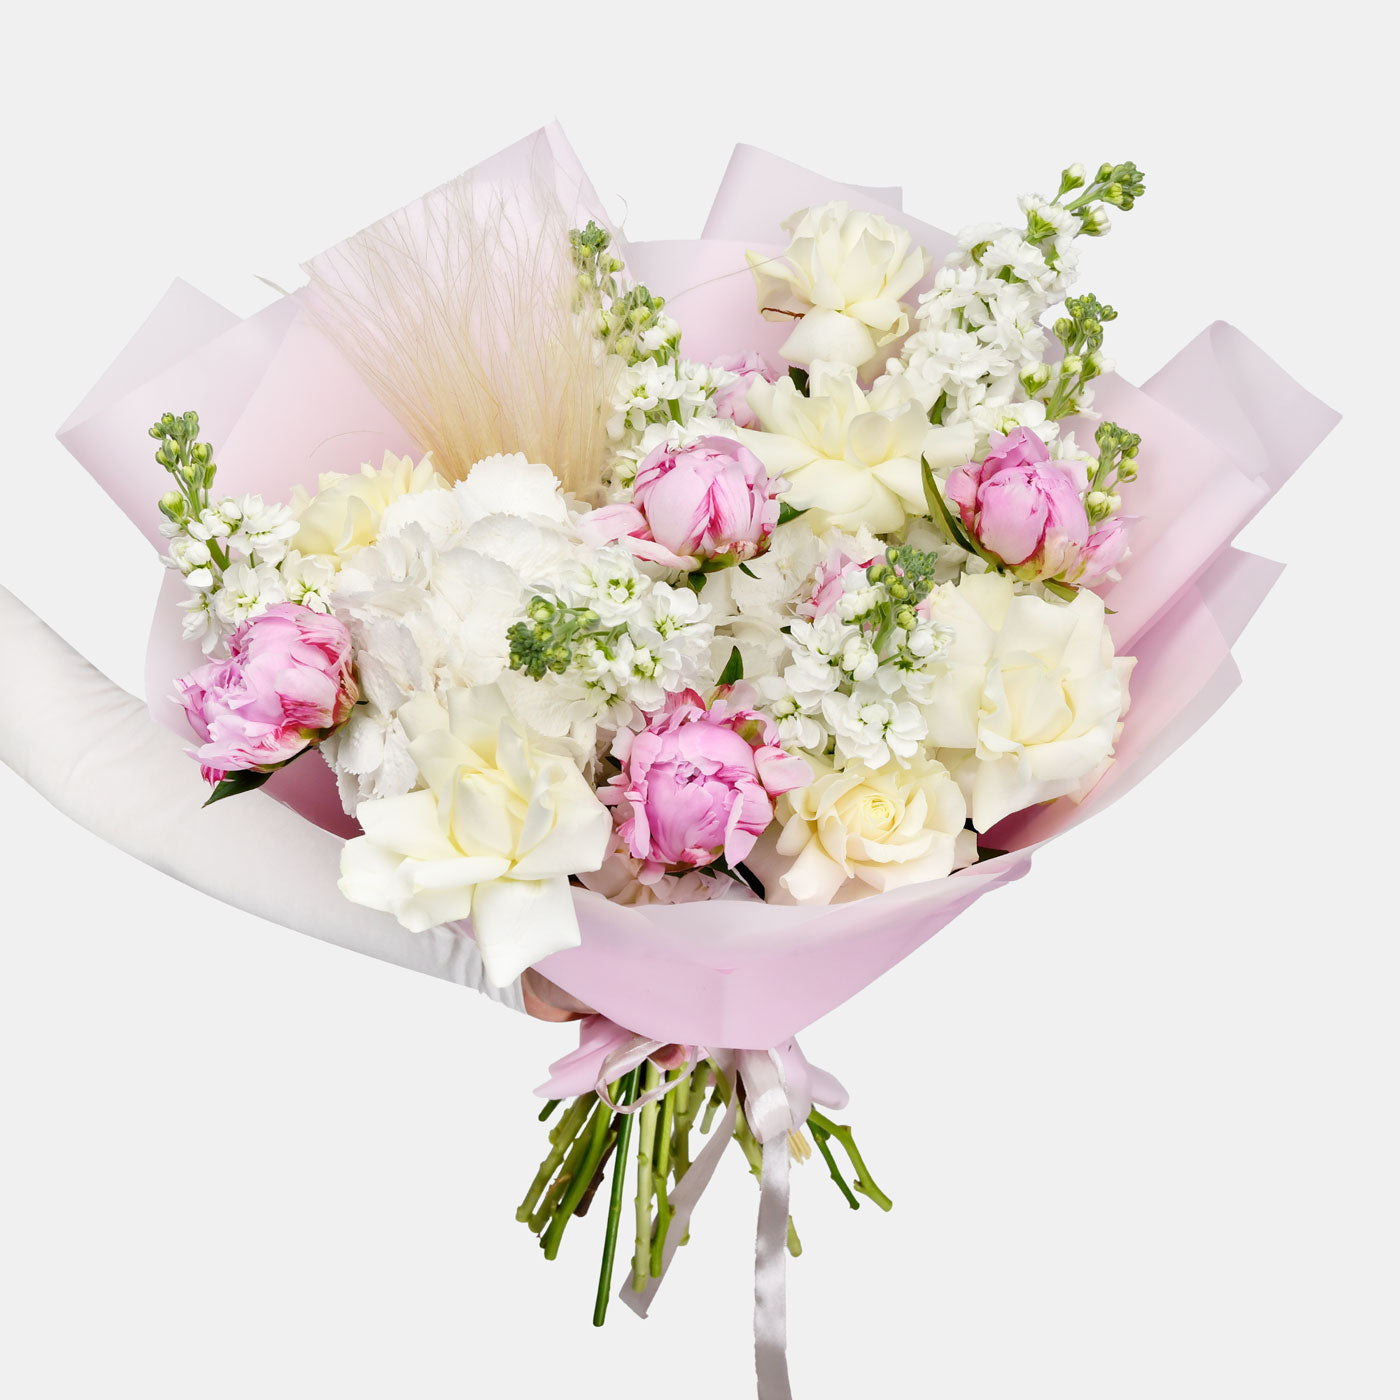 Buchet bujori naturali roz, trandafiri albi si matthiola, 1